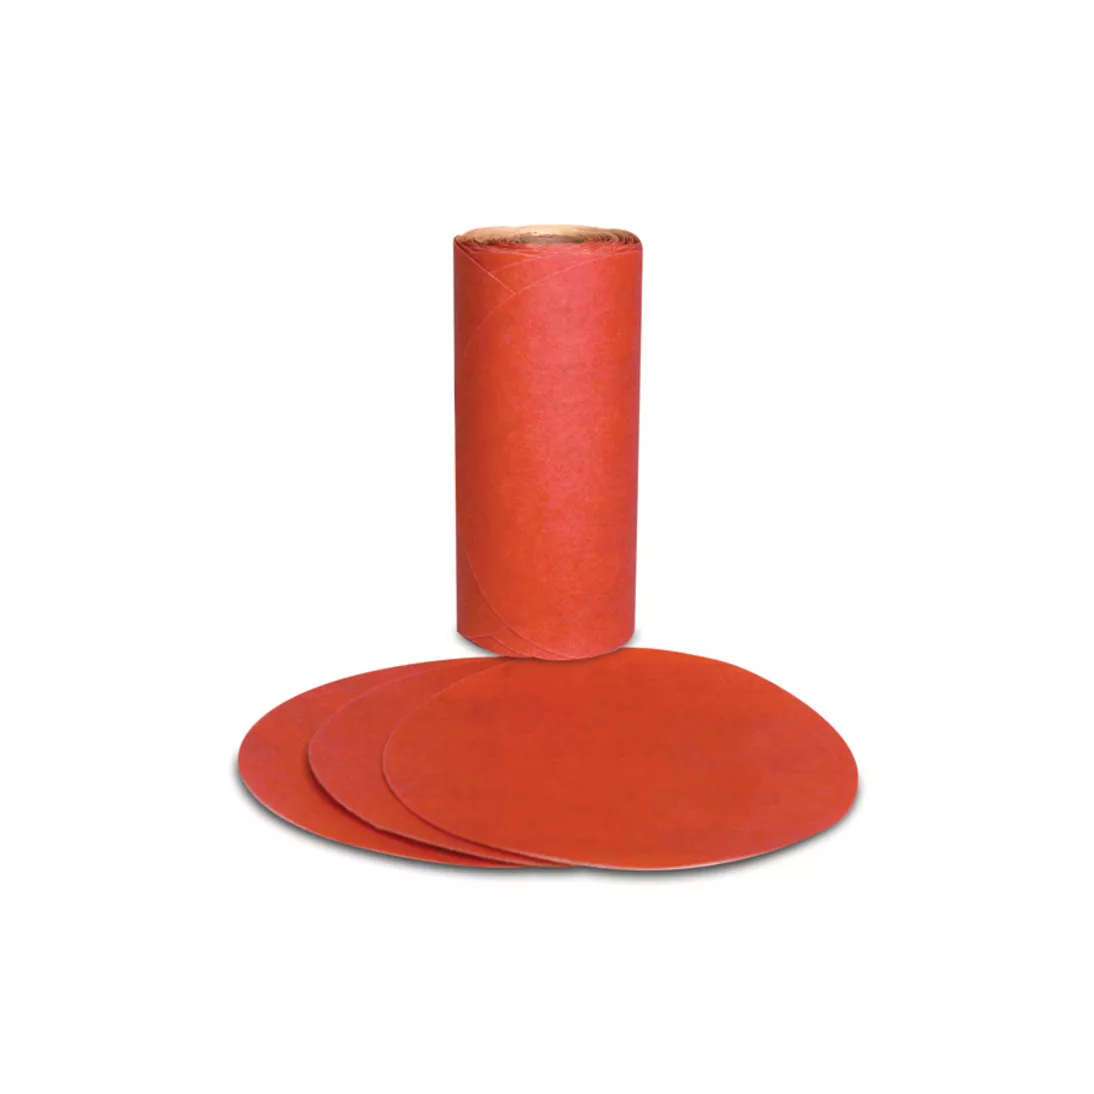 3M™ Red Abrasive PSA Disc, 01603, 5 in, P320, 100 discs per roll, 6
rolls per case